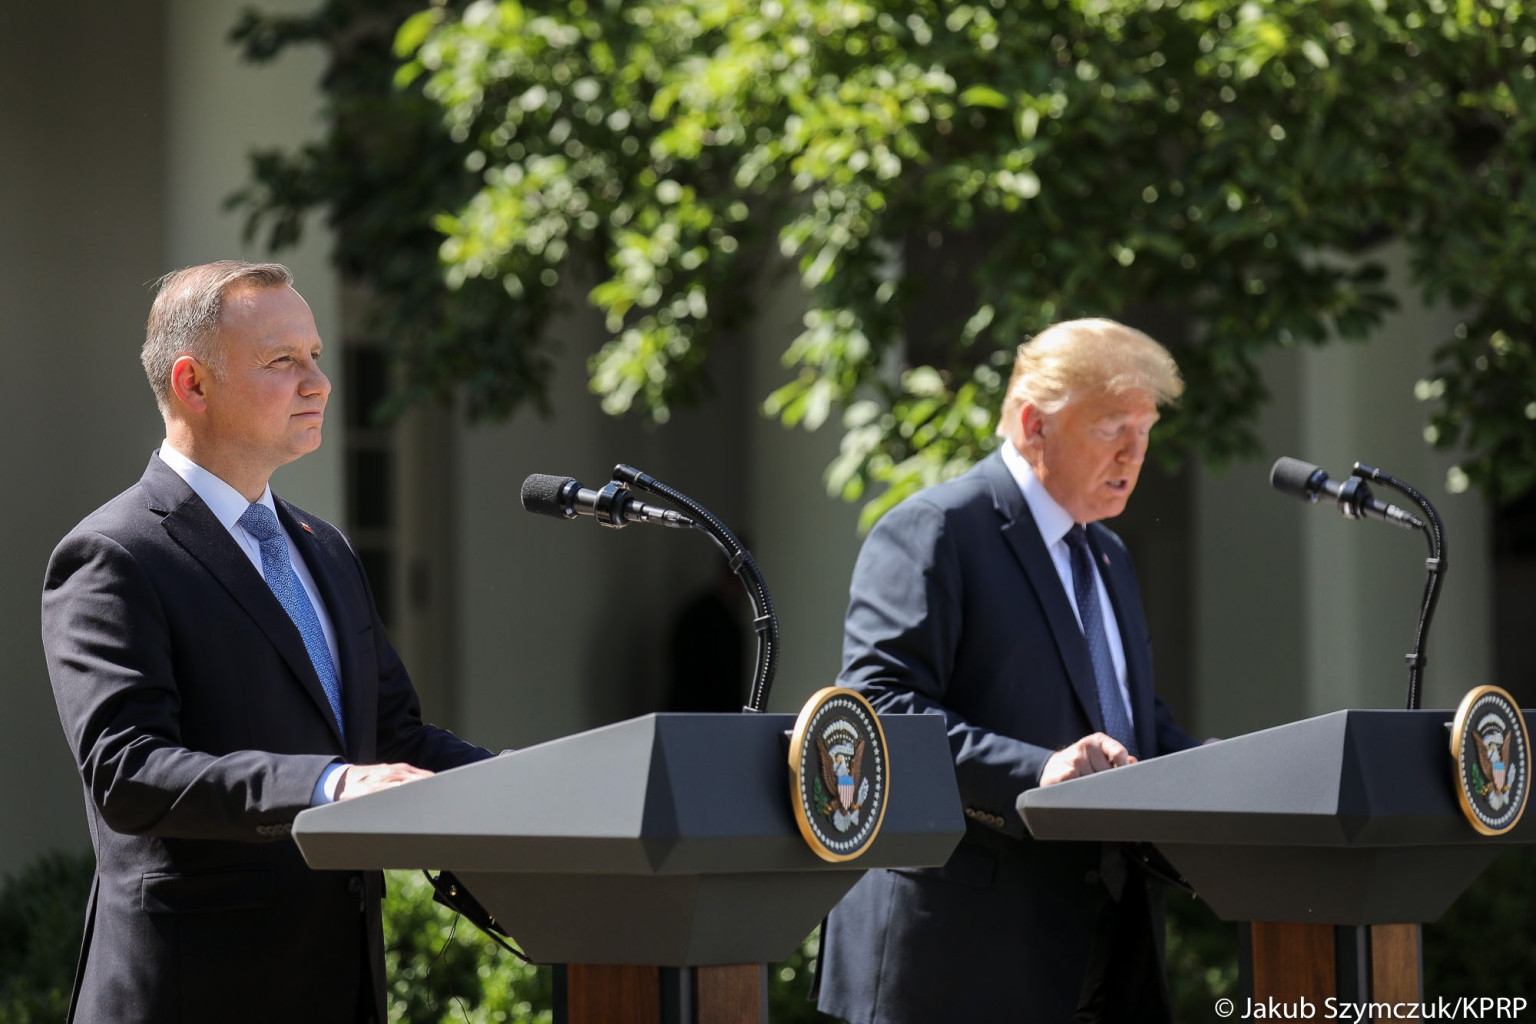 Andrjez Duda und Donald Trump stellen im Juni 2020 in Washington die Ergebnisse ihrer Unterredung zu Polens Kernenergiepläne vor.